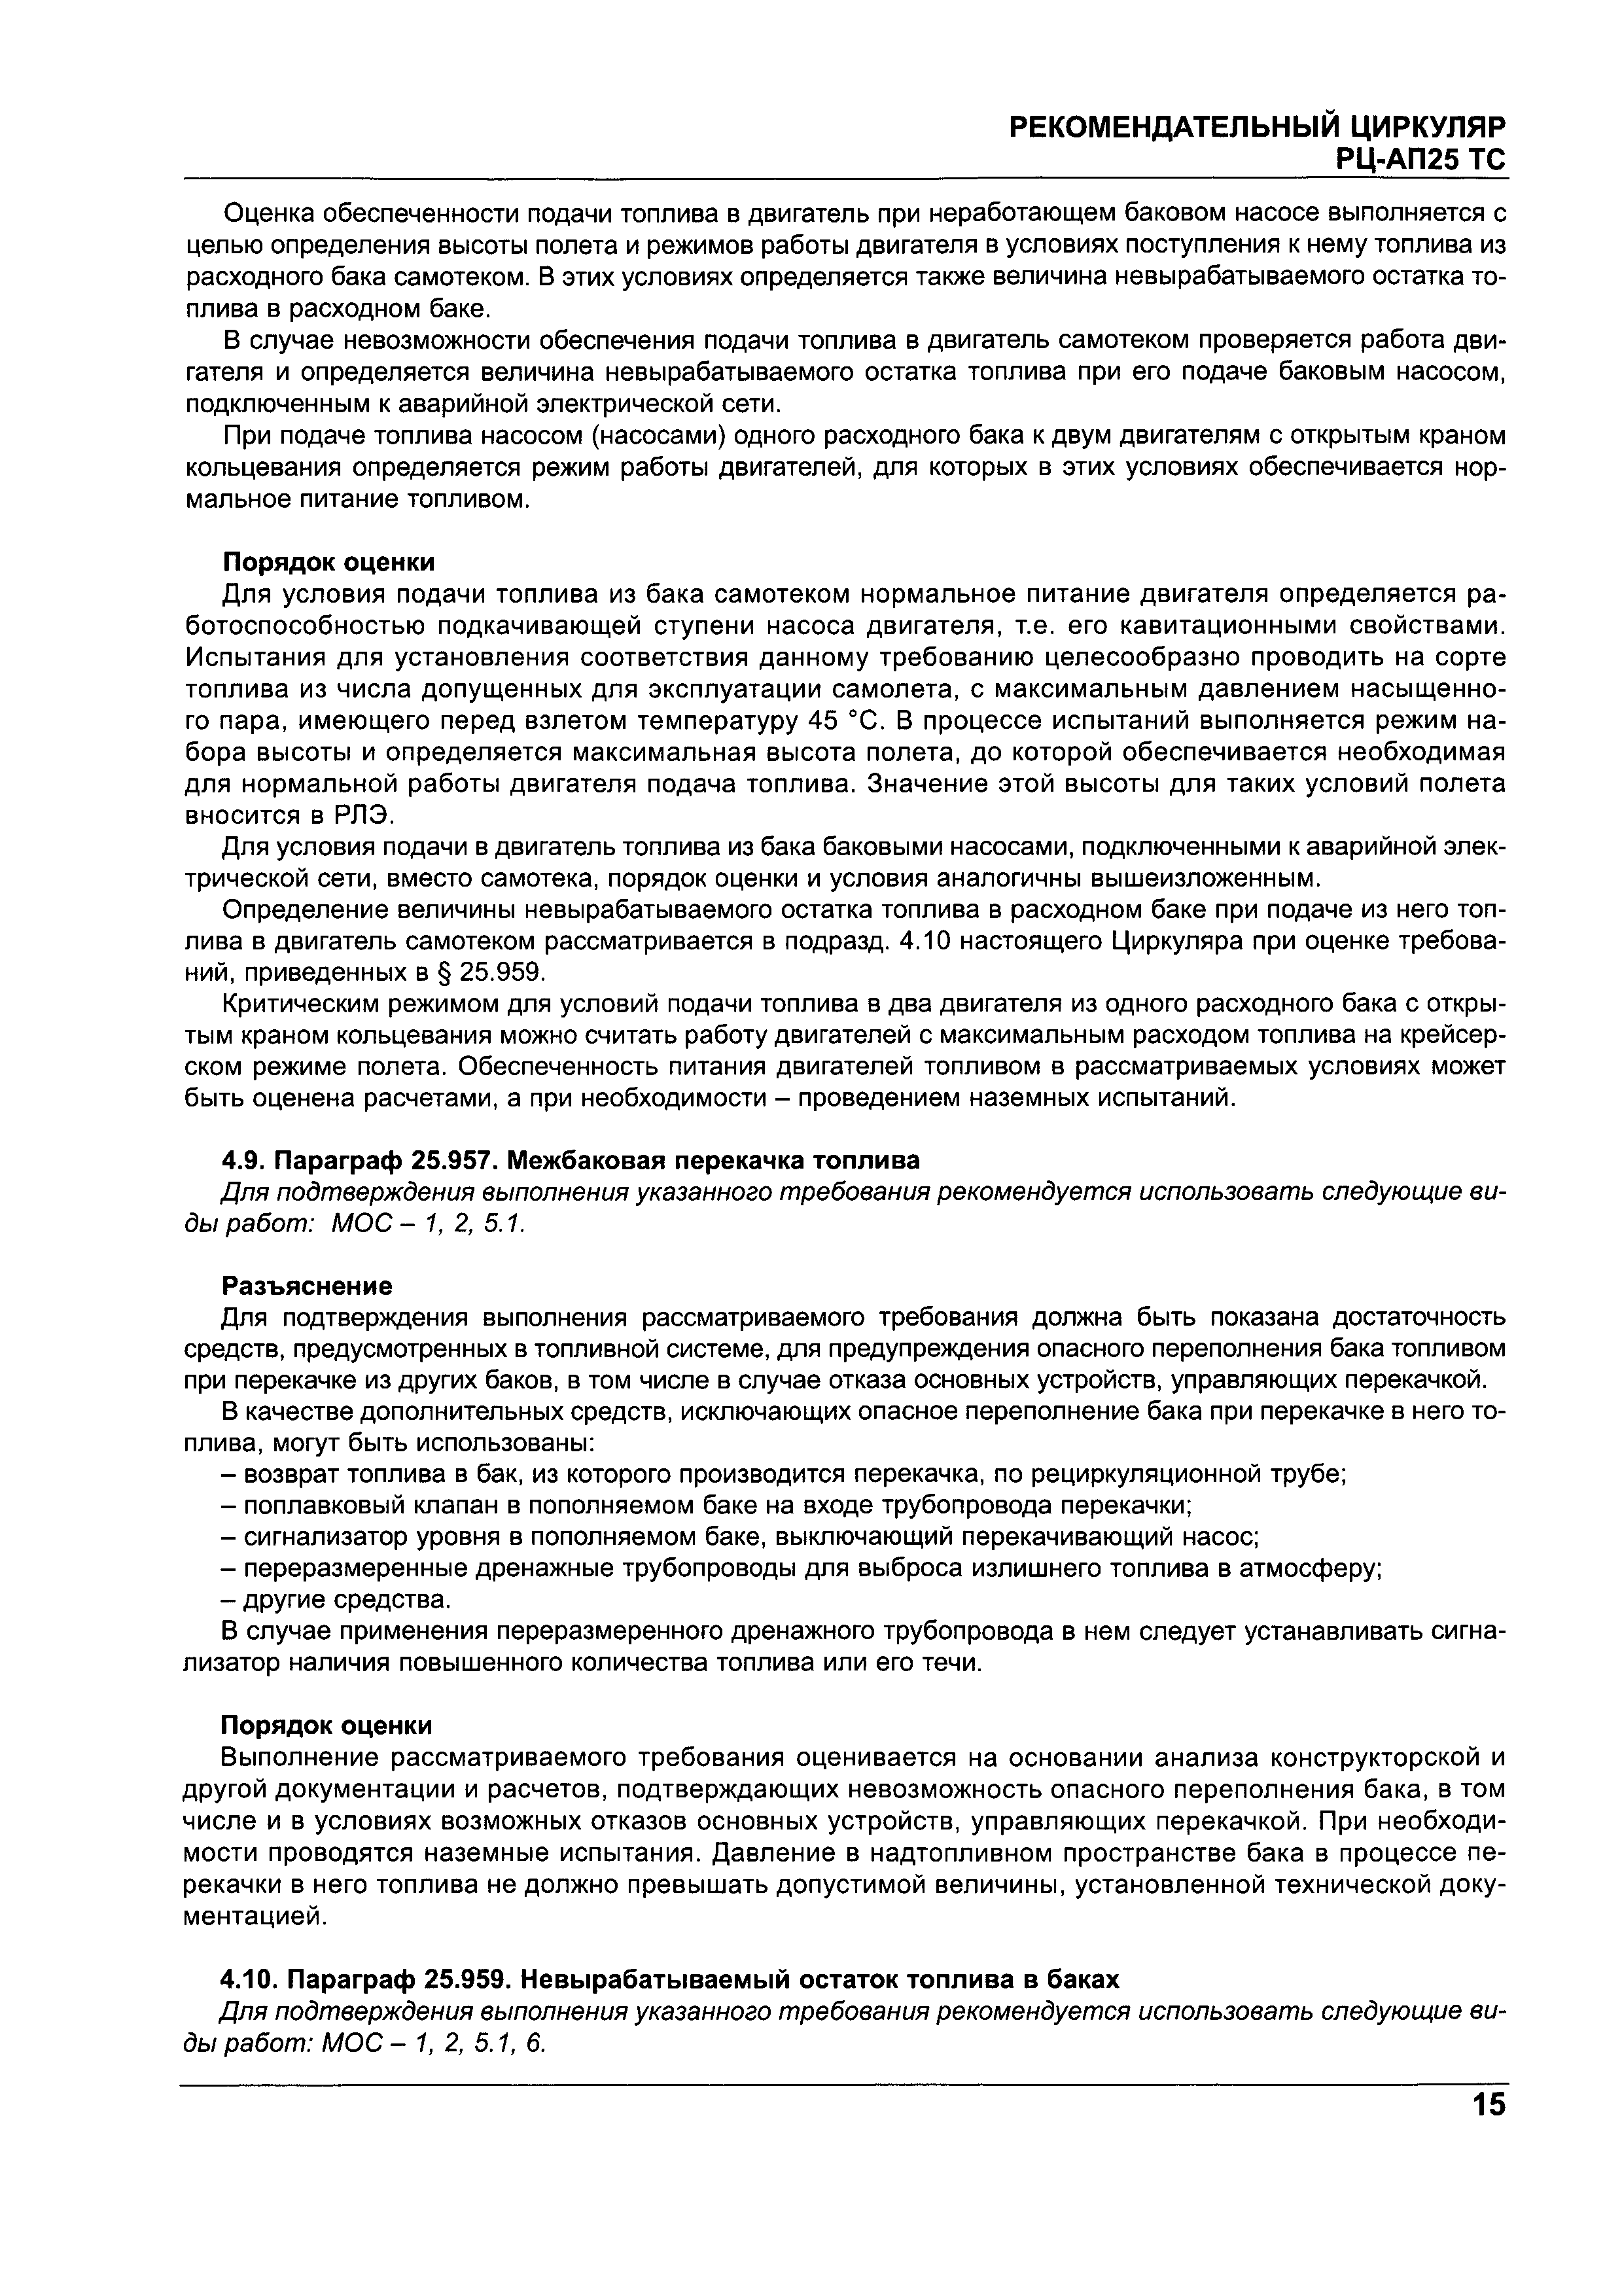 Директивное письмо 05-2004